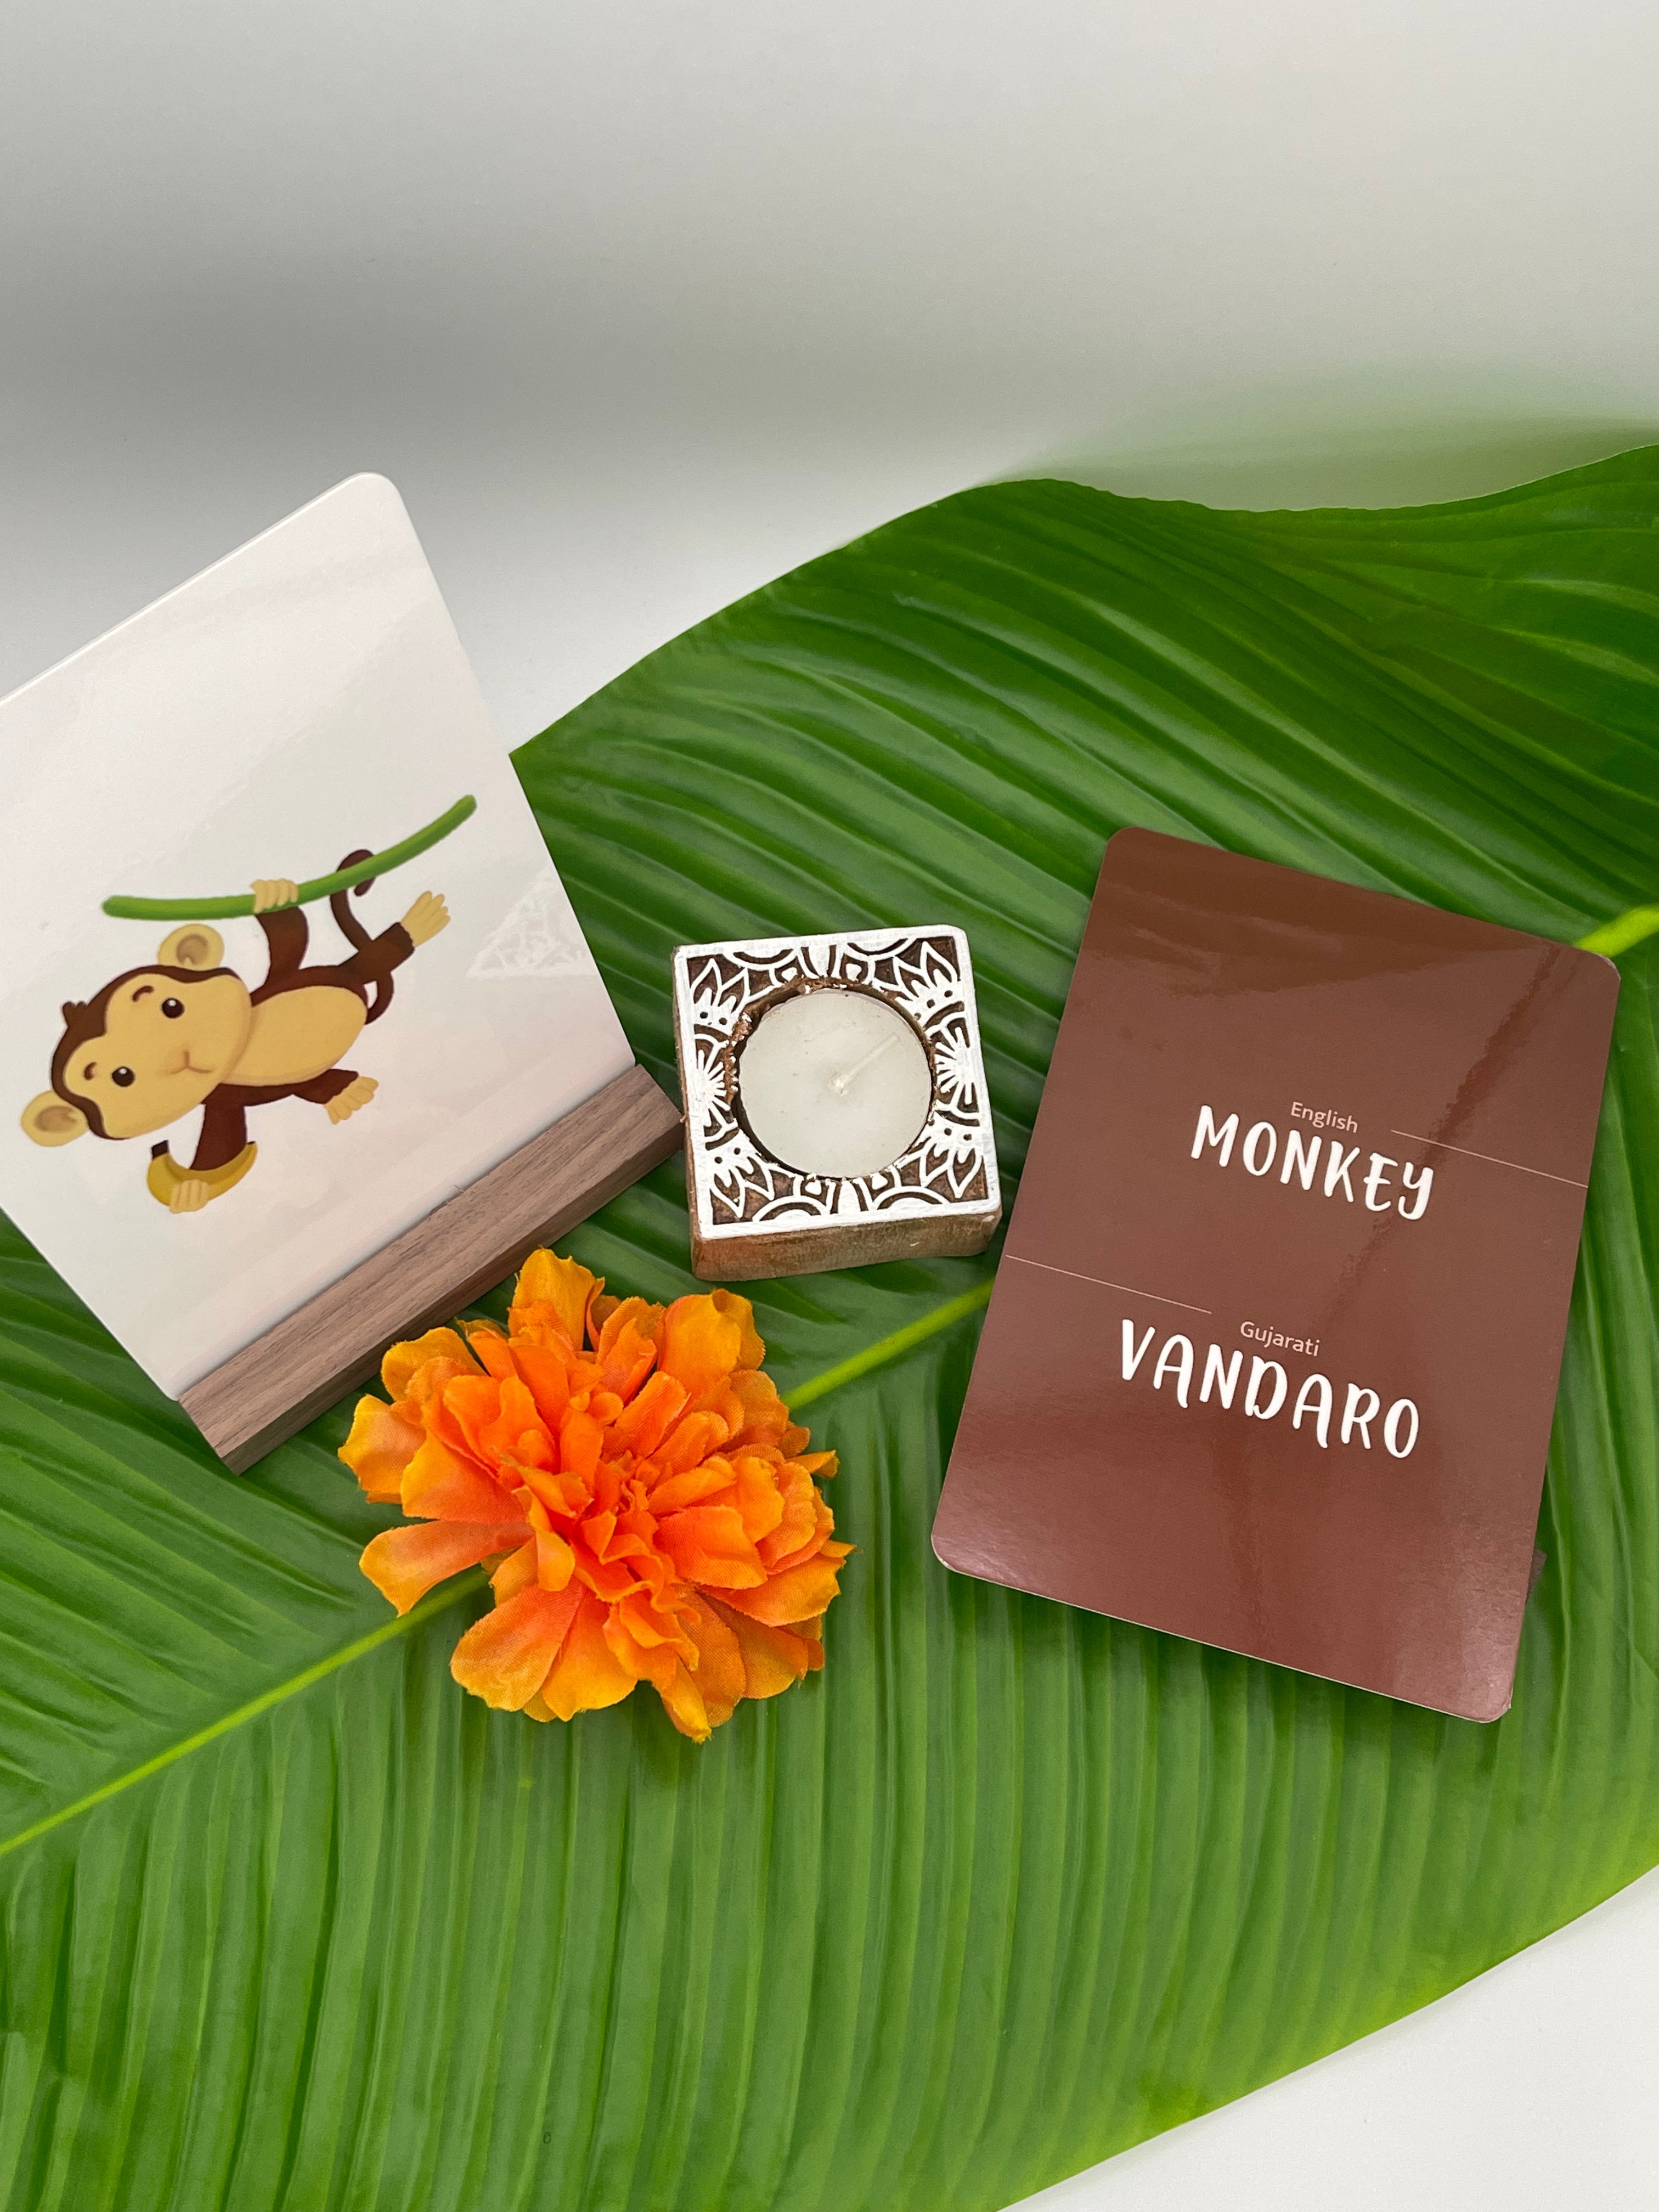 Gujarati Koala Mom Flashcards (Gujarati - English) - BhashaKids